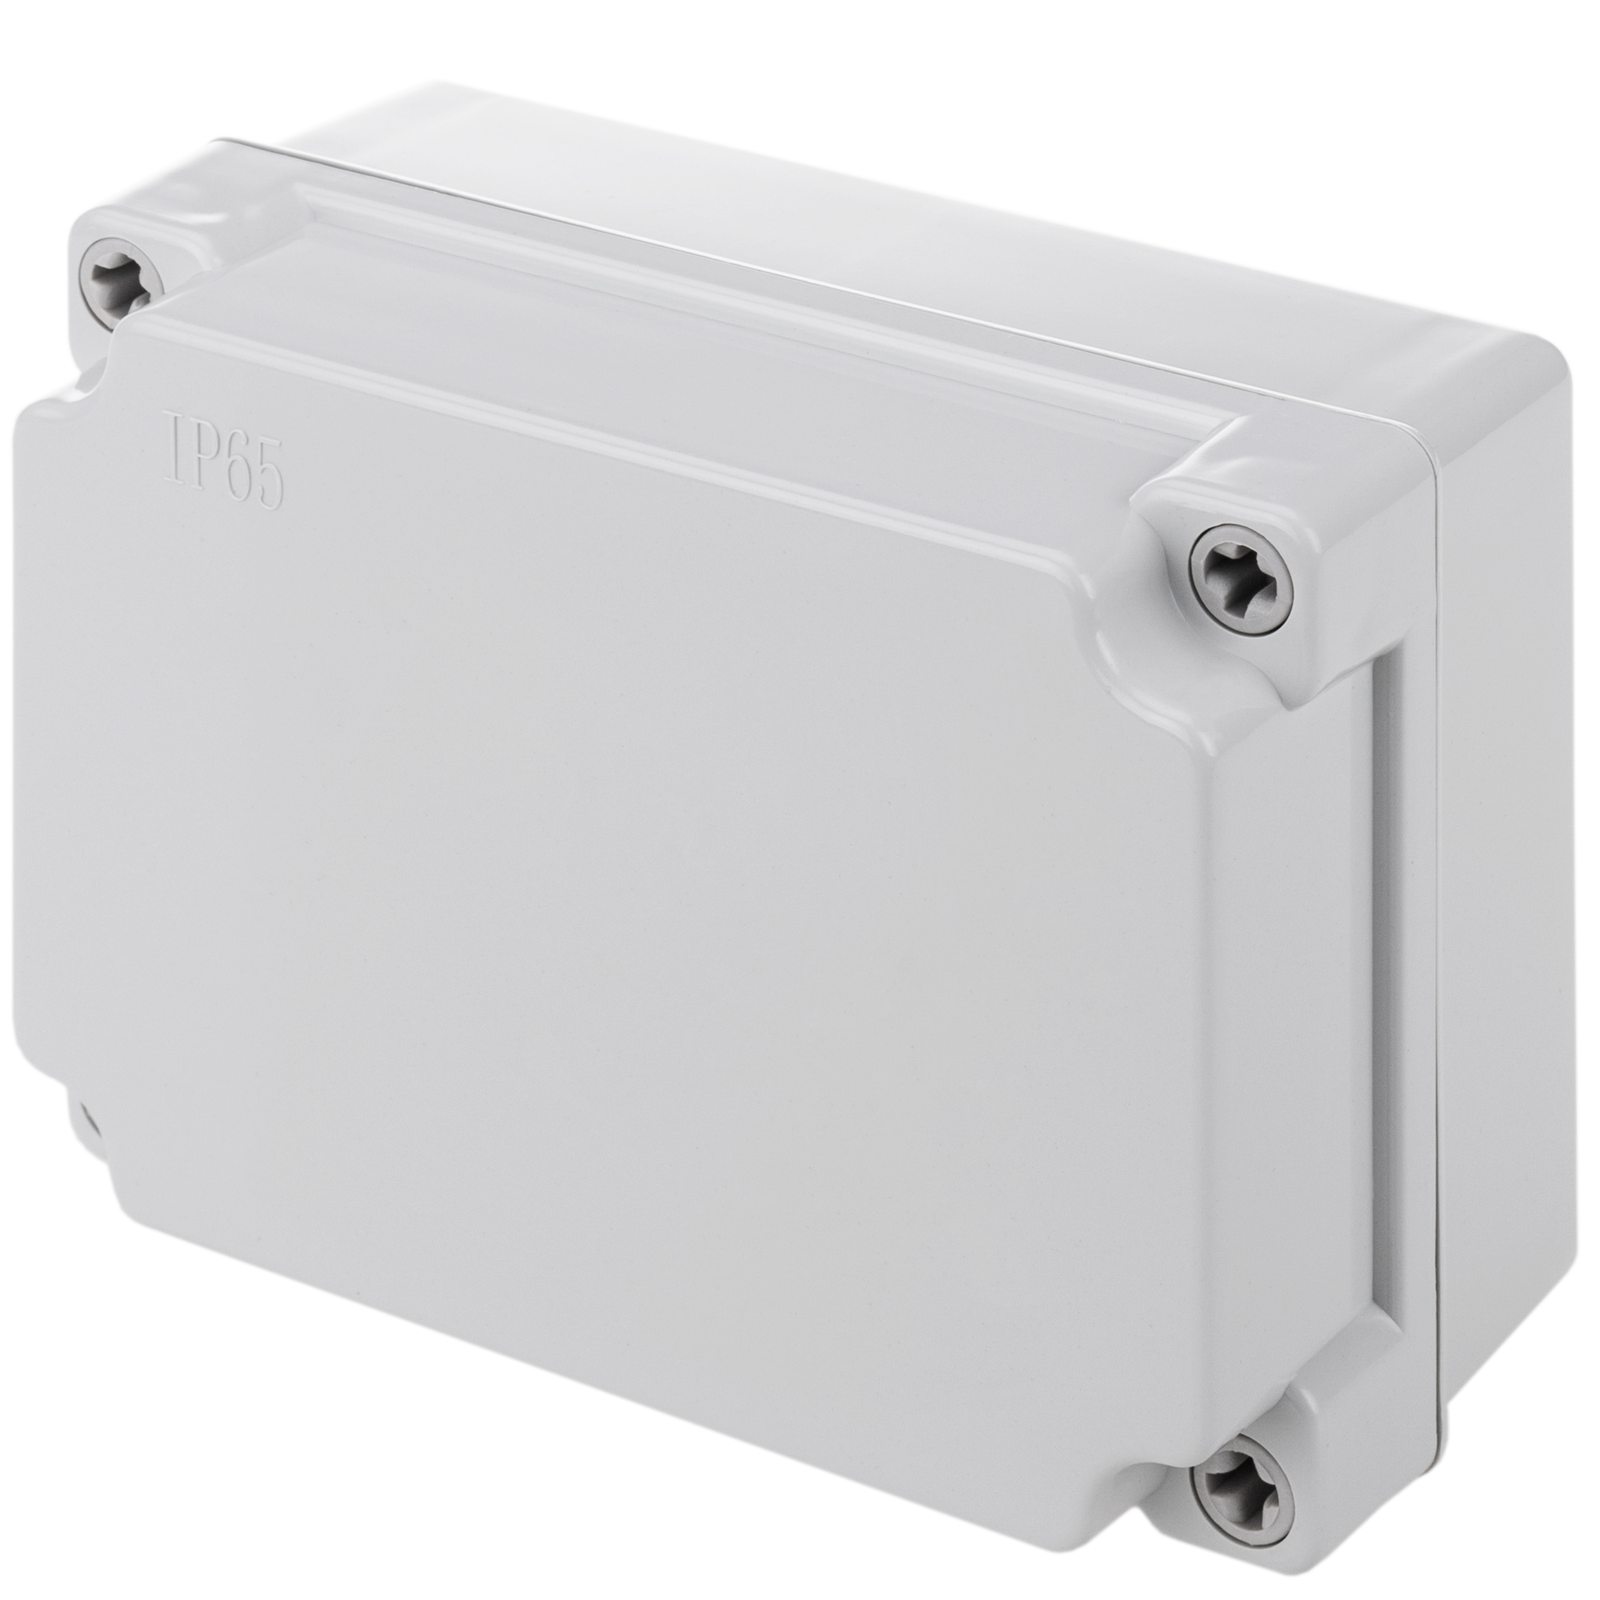 Caja estanca de superficie rectangular IP55 300 x 250 x 120 mm - Cablematic